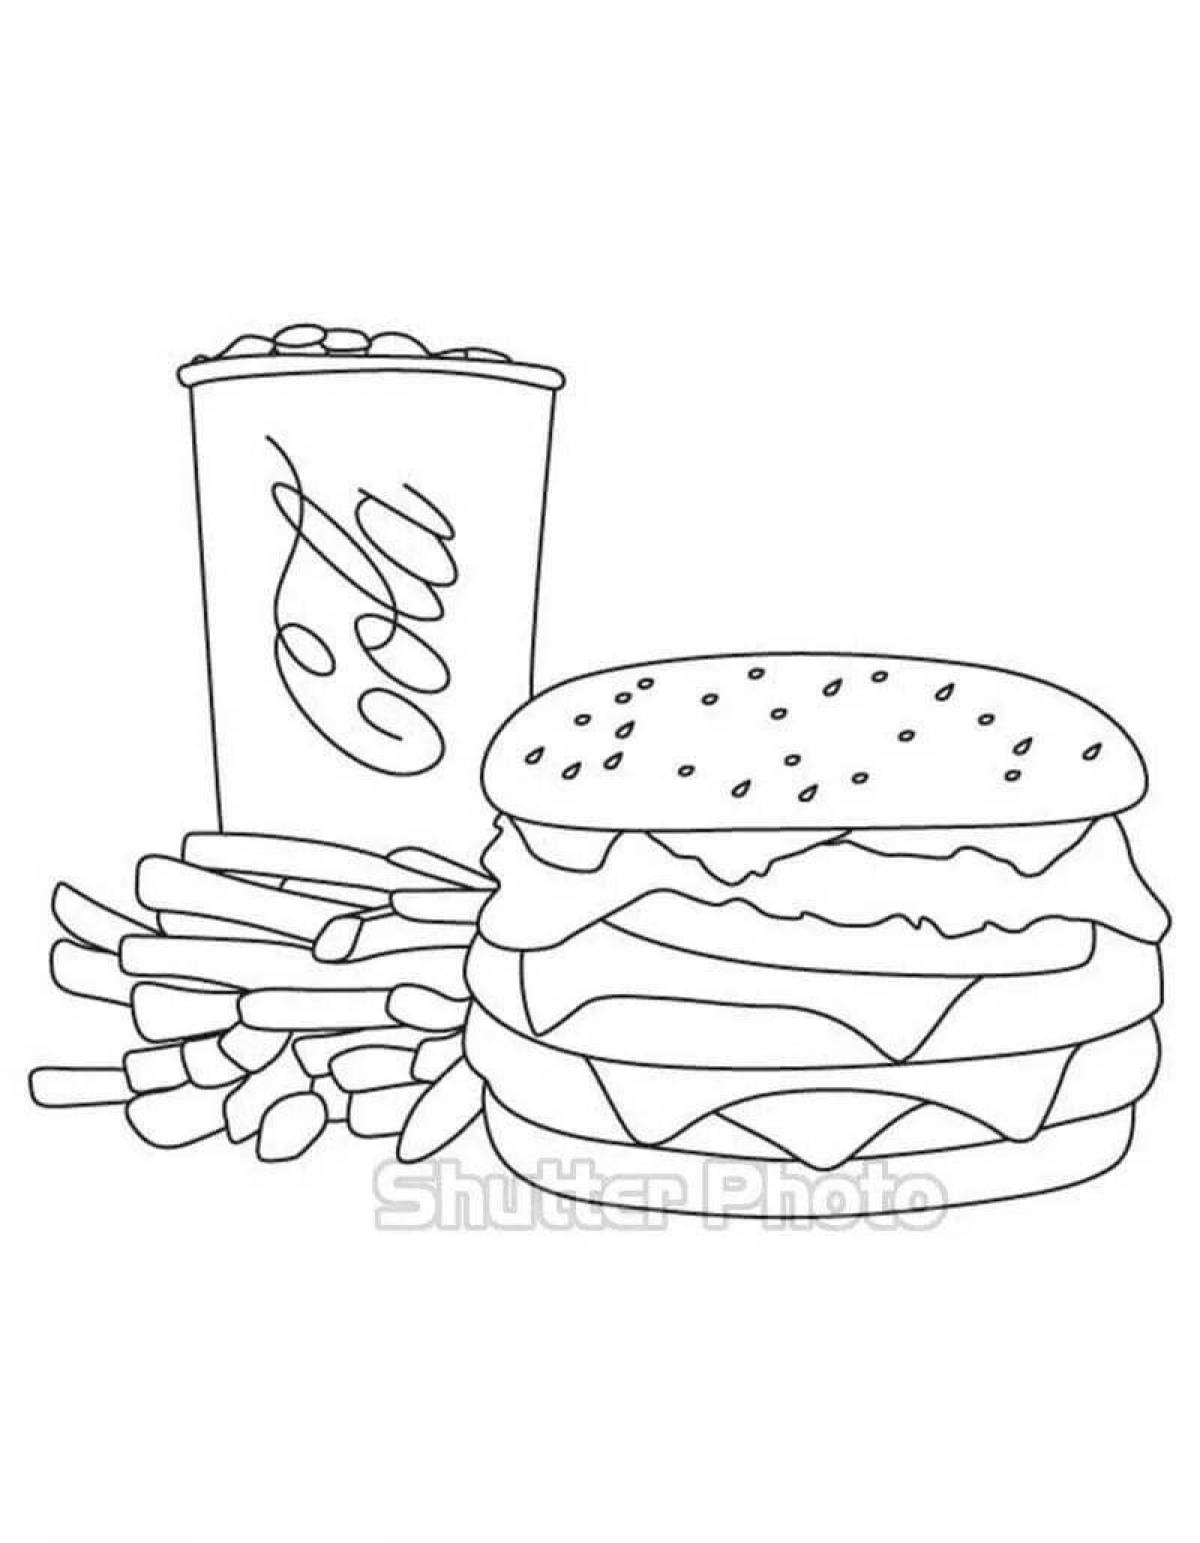 Consolation cheeseburger coloring page